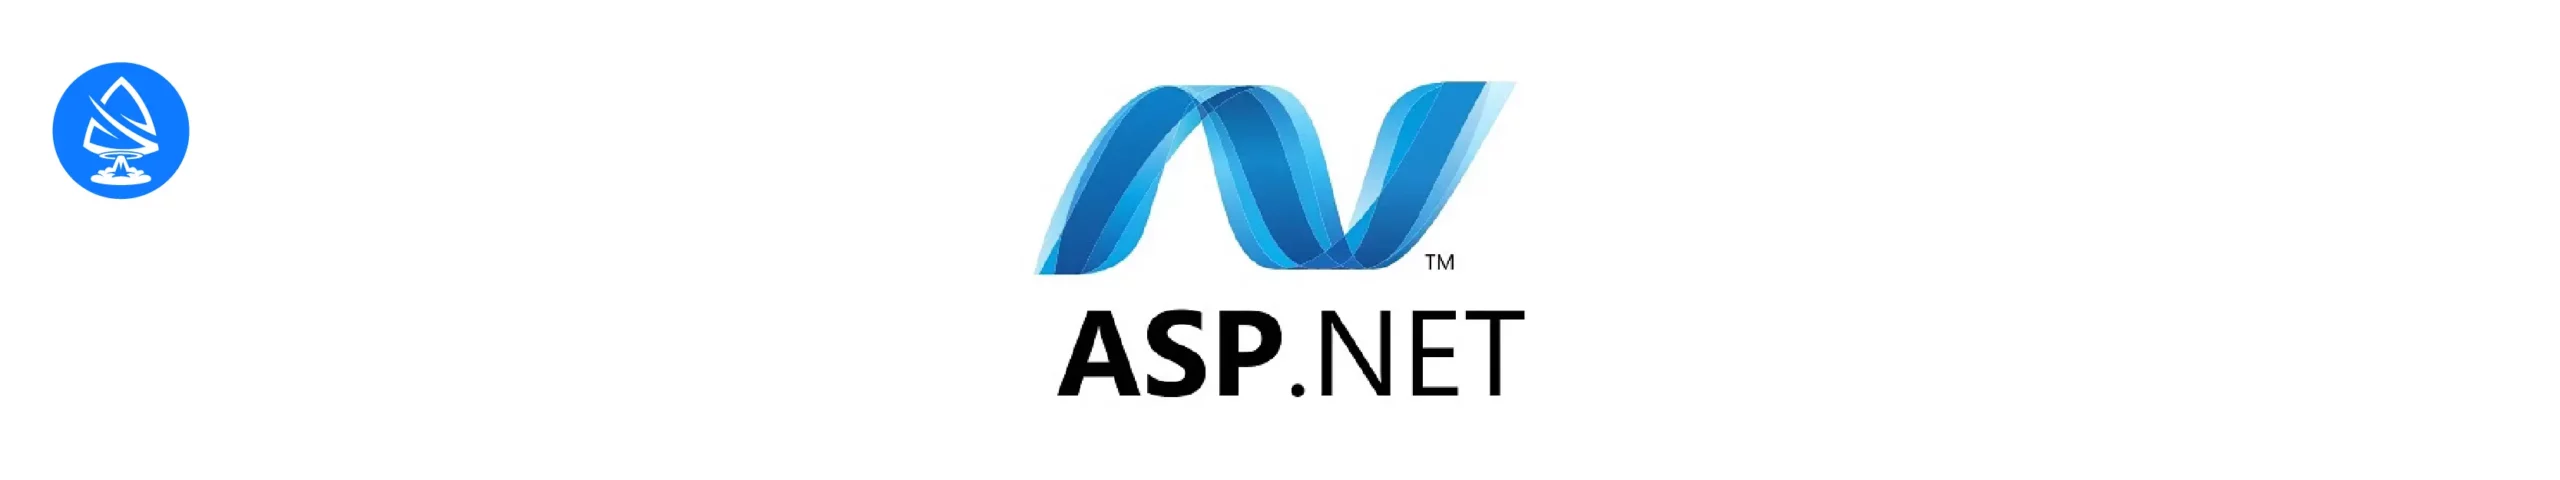 nodejs alternatives: ASP.NET